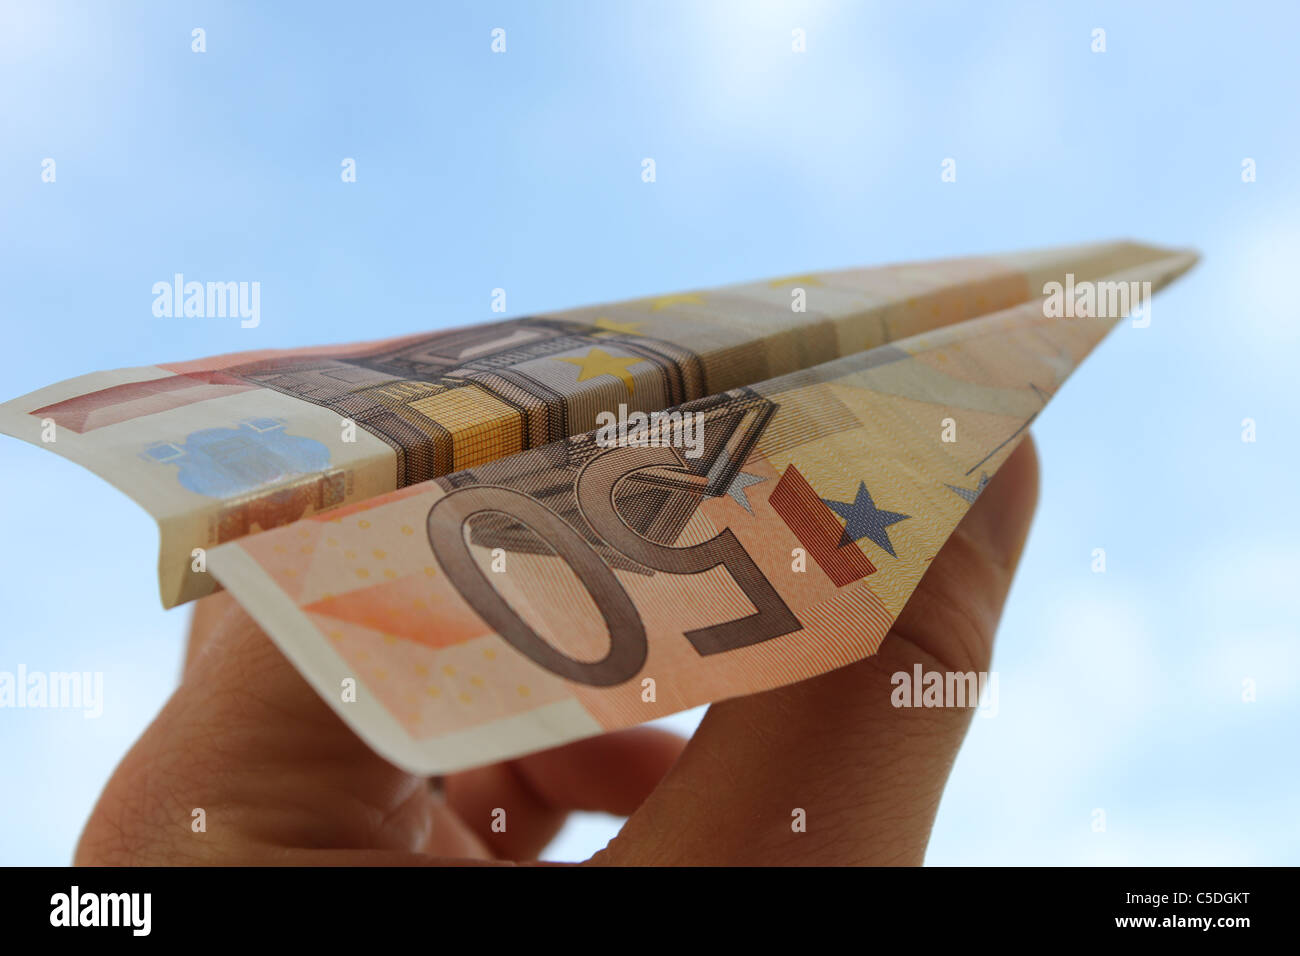 Papierflieger aus einem 50 Euro-Schein gemacht Stockfoto